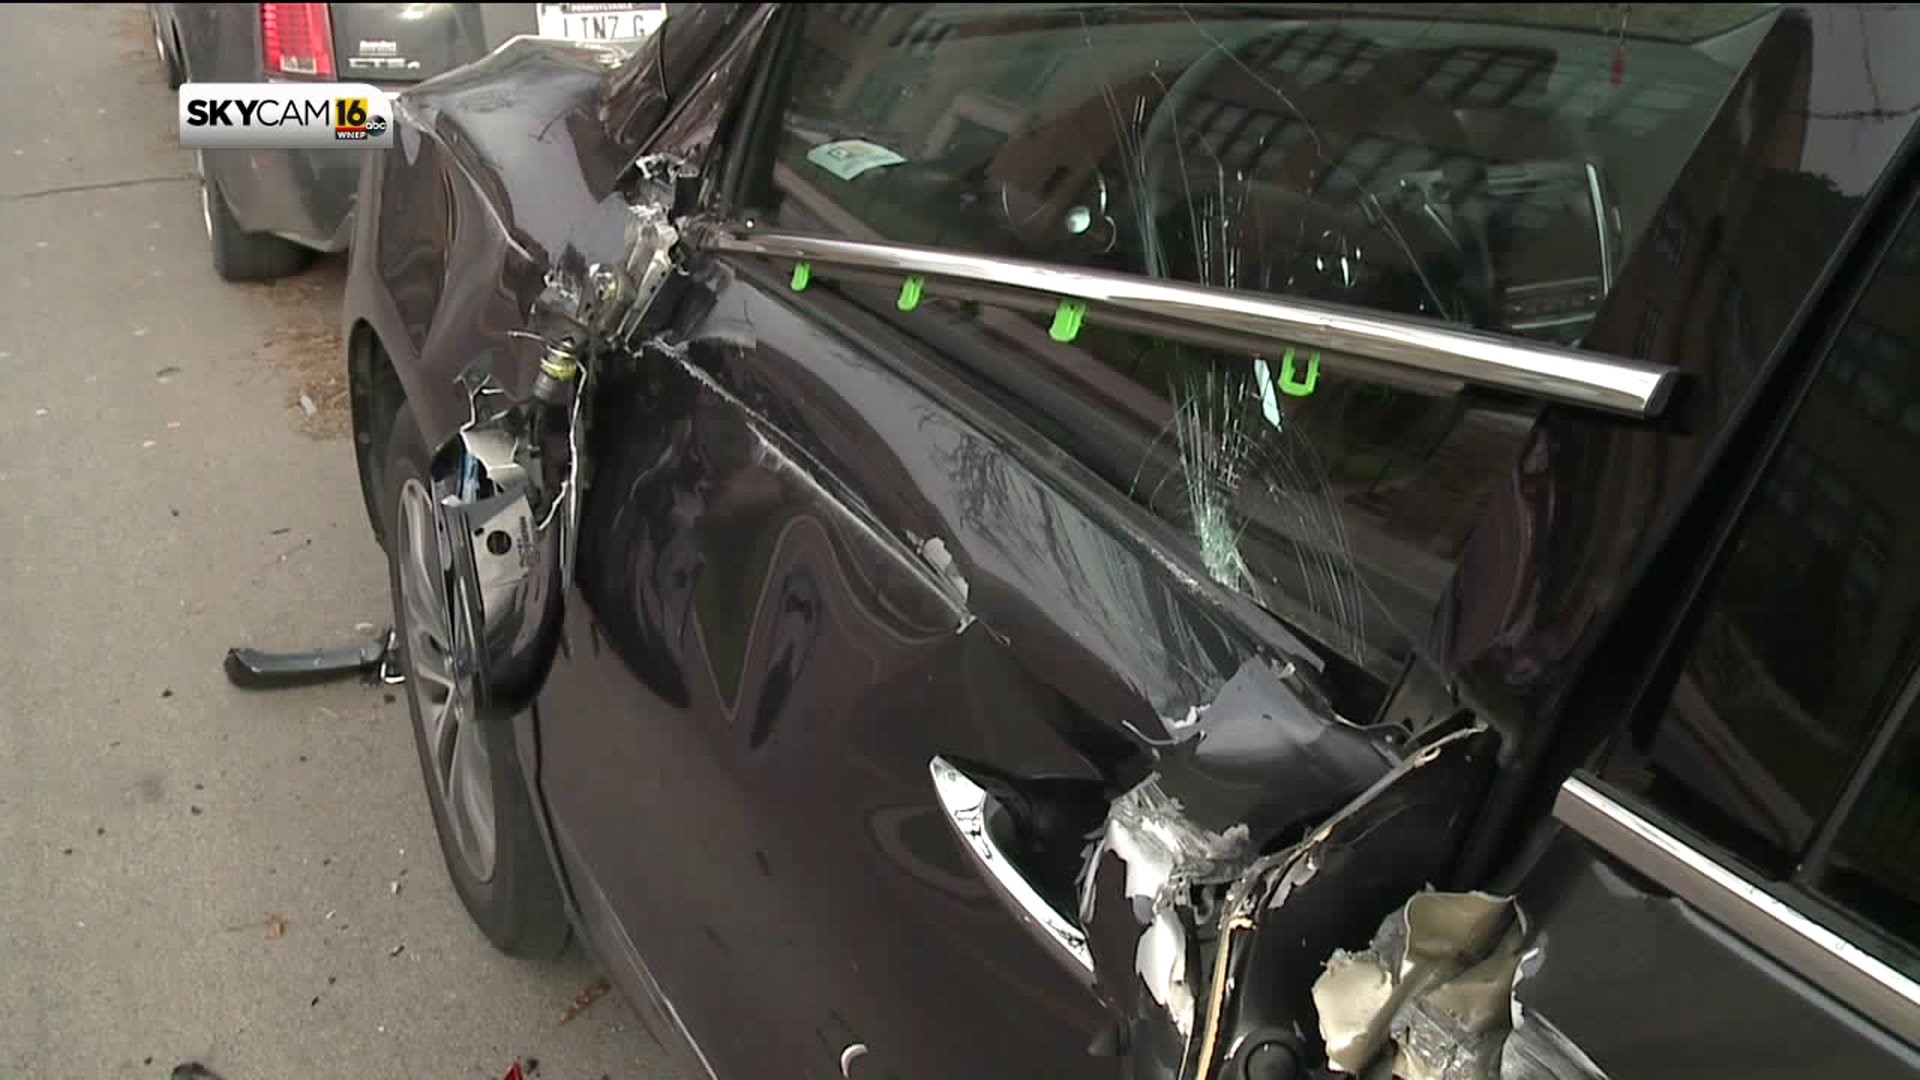 Big Rig Wrecks Cars in West Scranton